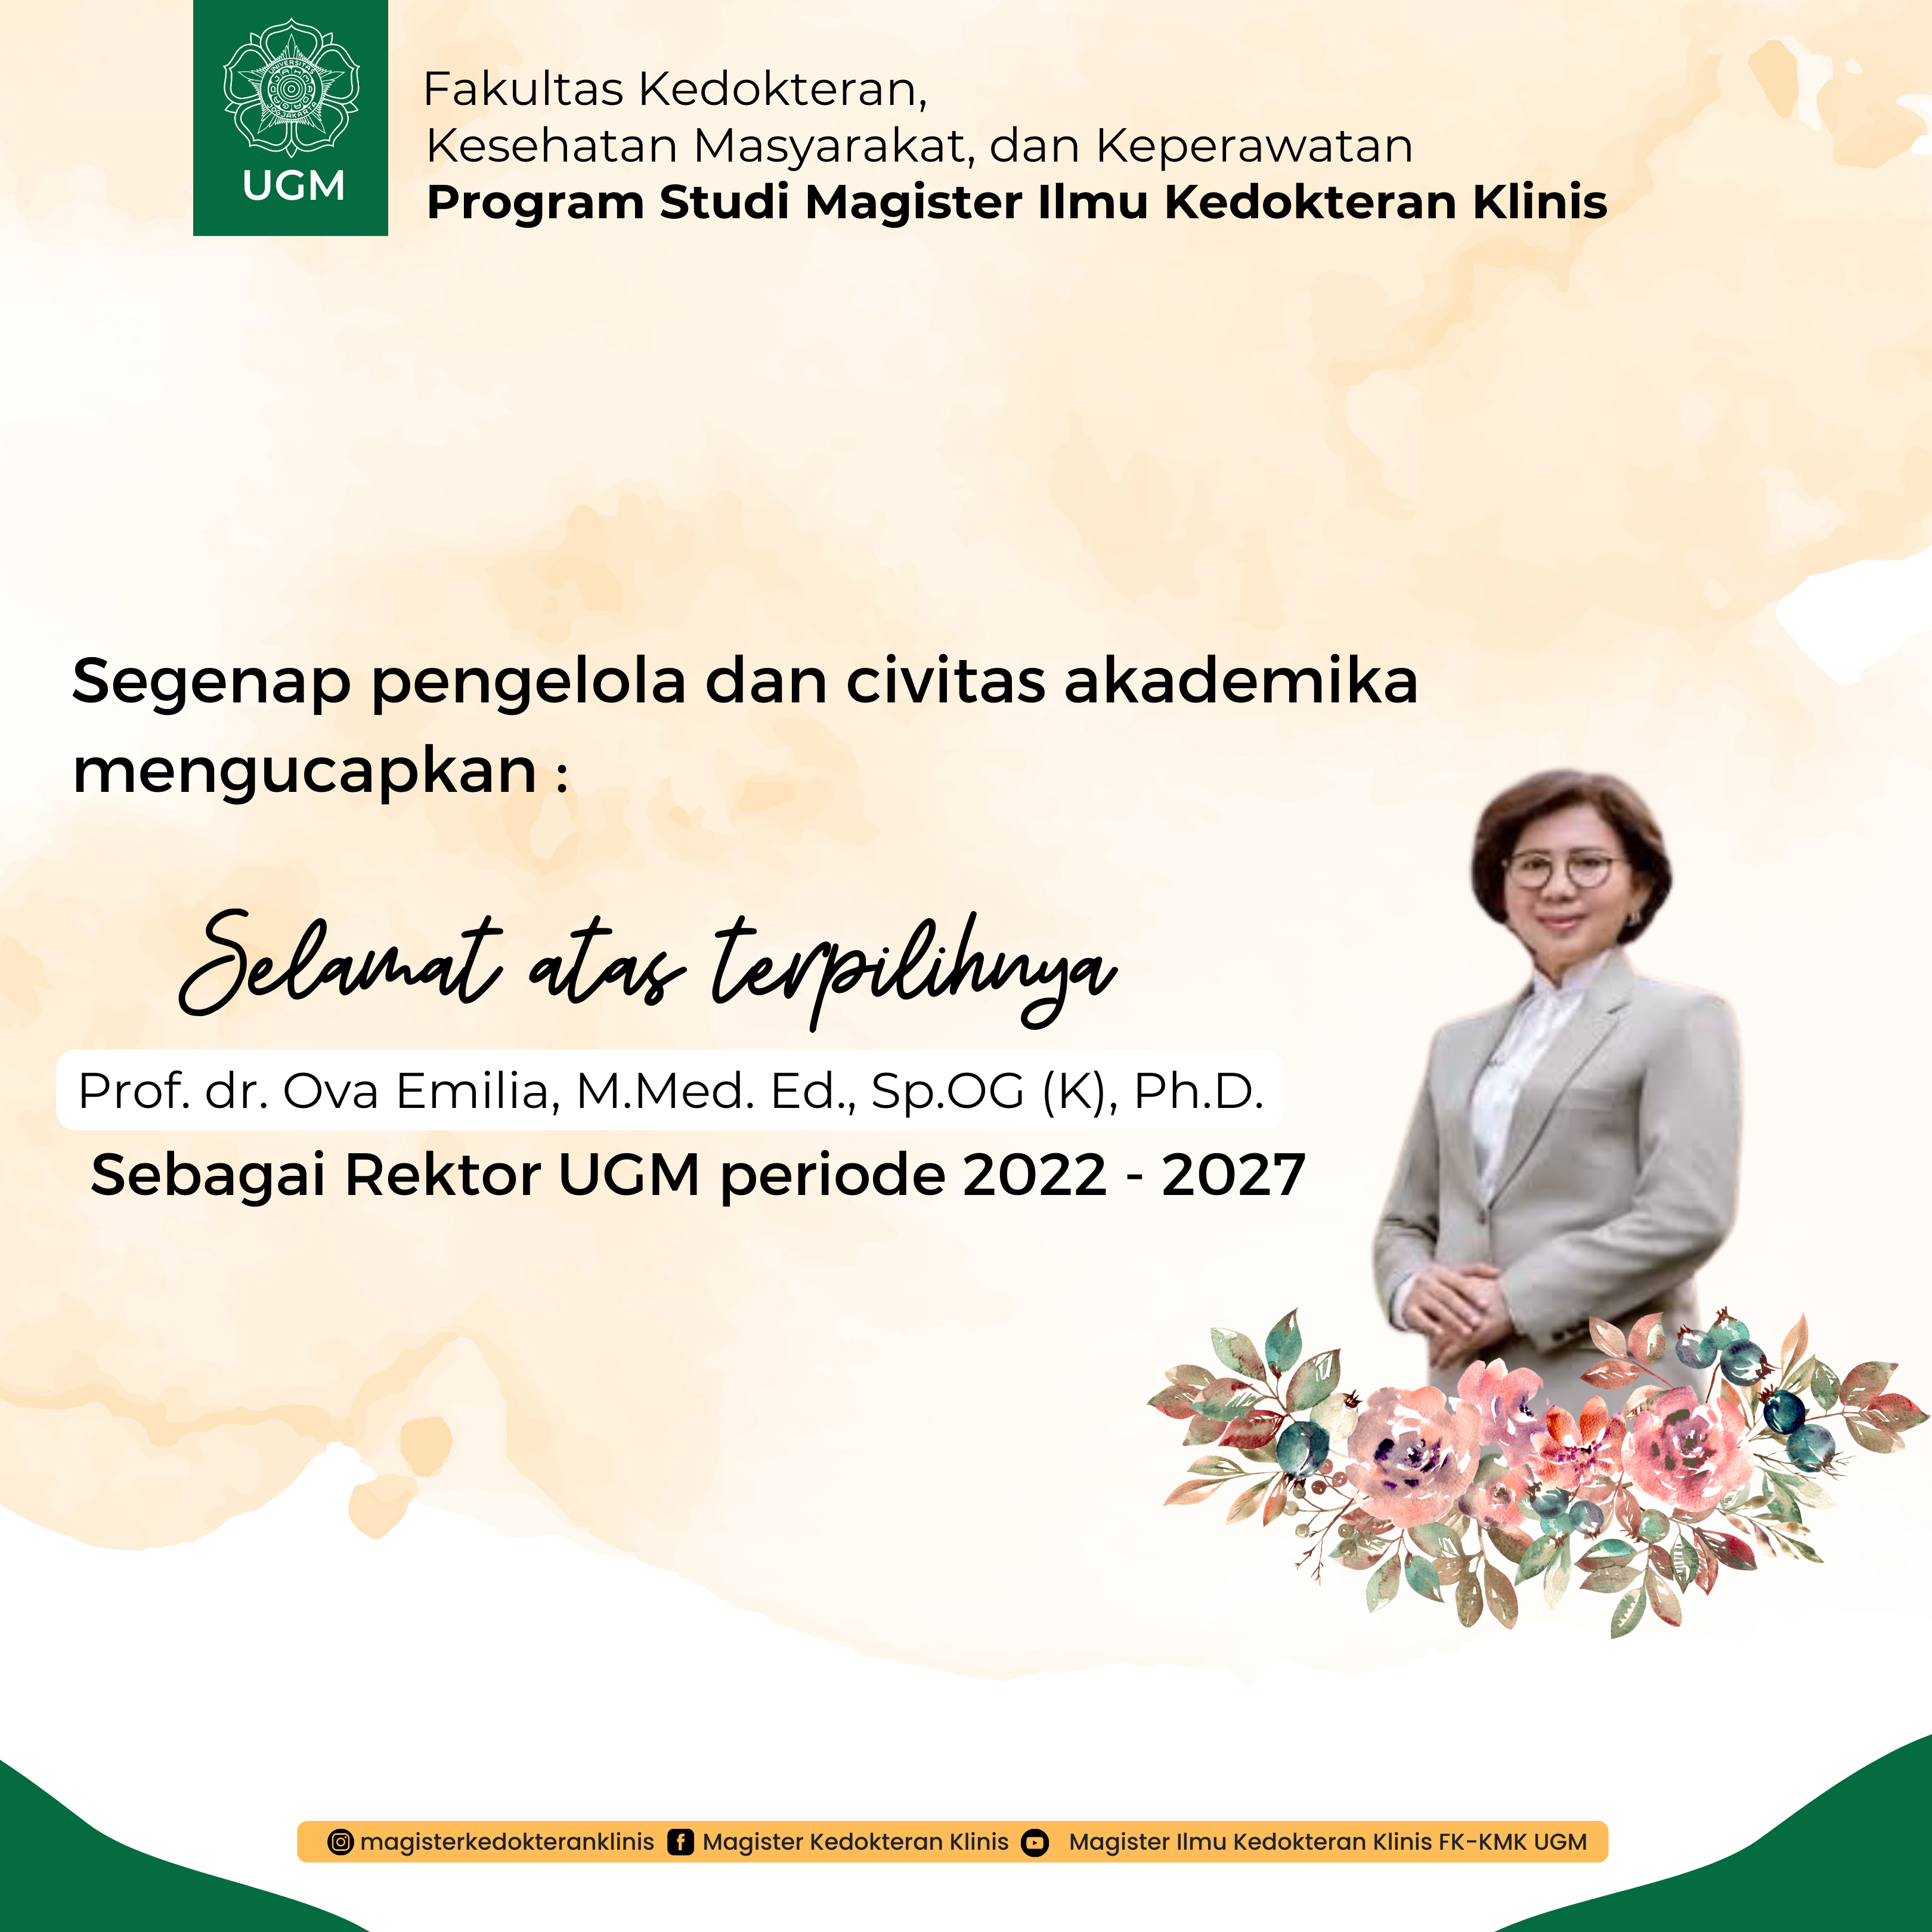 Selamat Atas Terpilihnya Rektor UGM 2022-2027